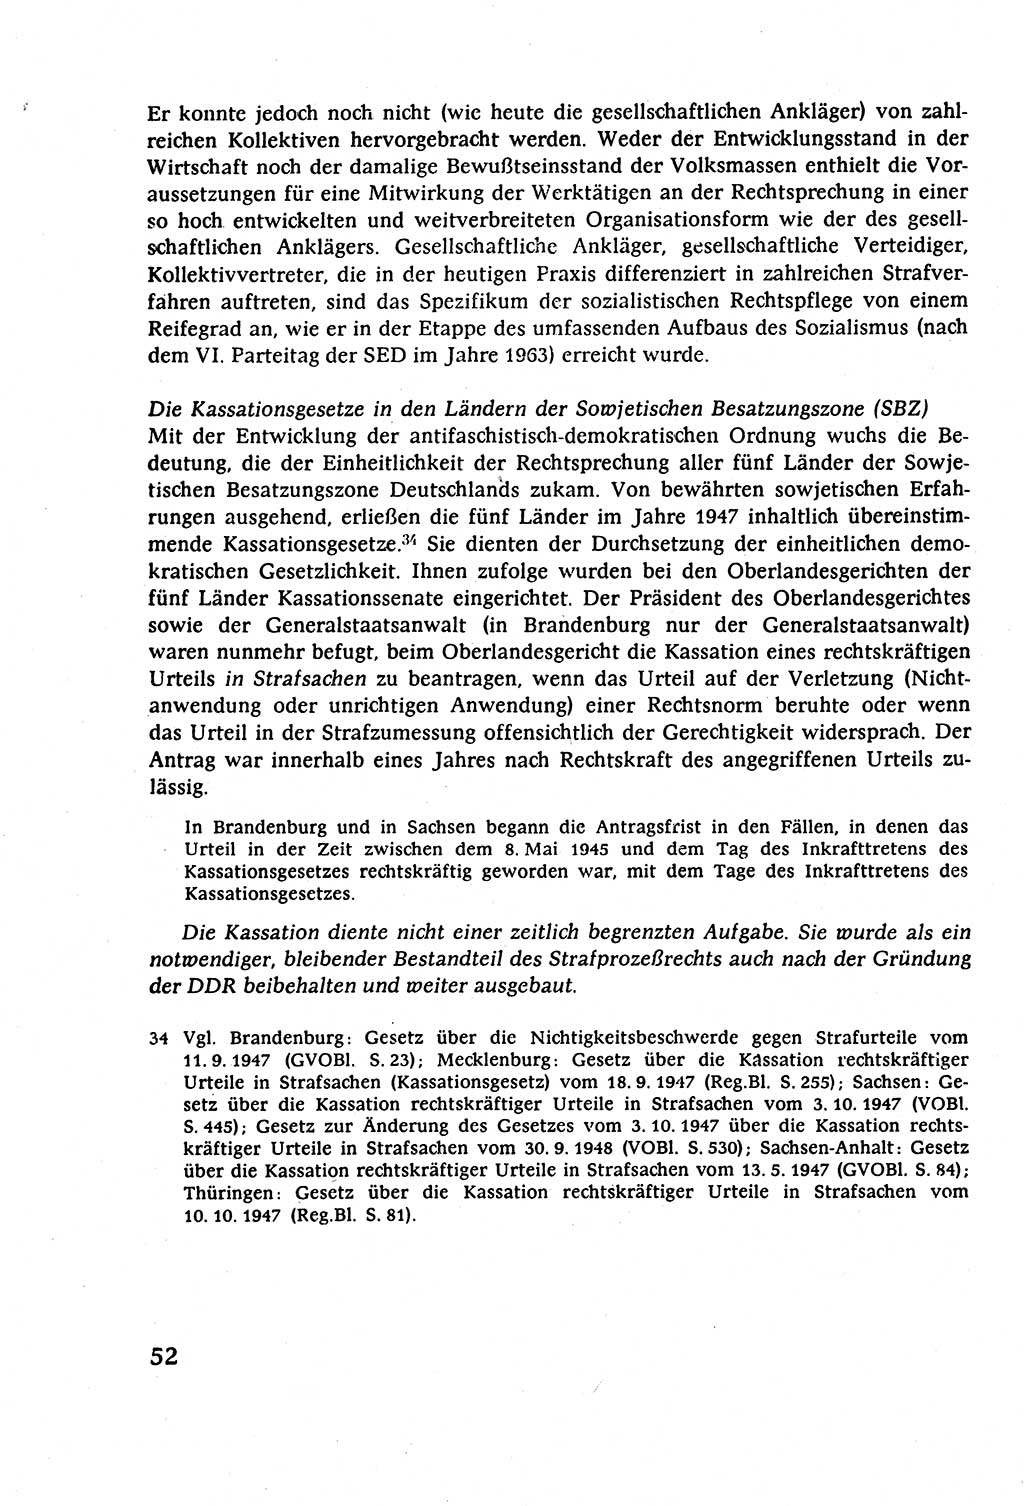 Strafverfahrensrecht [Deutsche Demokratische Republik (DDR)], Lehrbuch 1977, Seite 52 (Strafverf.-R. DDR Lb. 1977, S. 52)